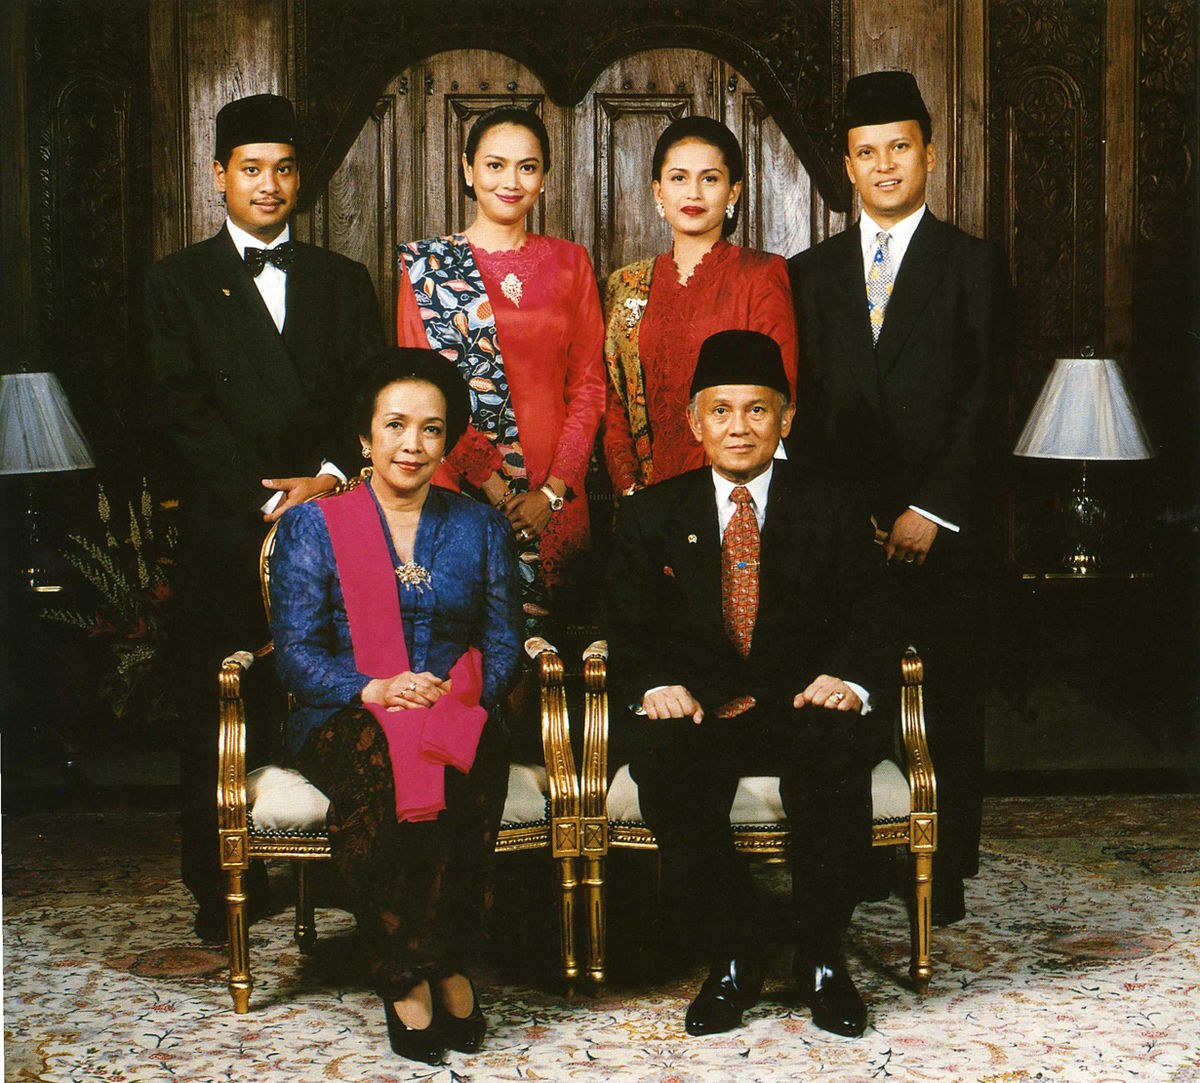 Bentuk Baju Pengantin Pria Muslim Modern Ffdn National Costume Of Indonesia